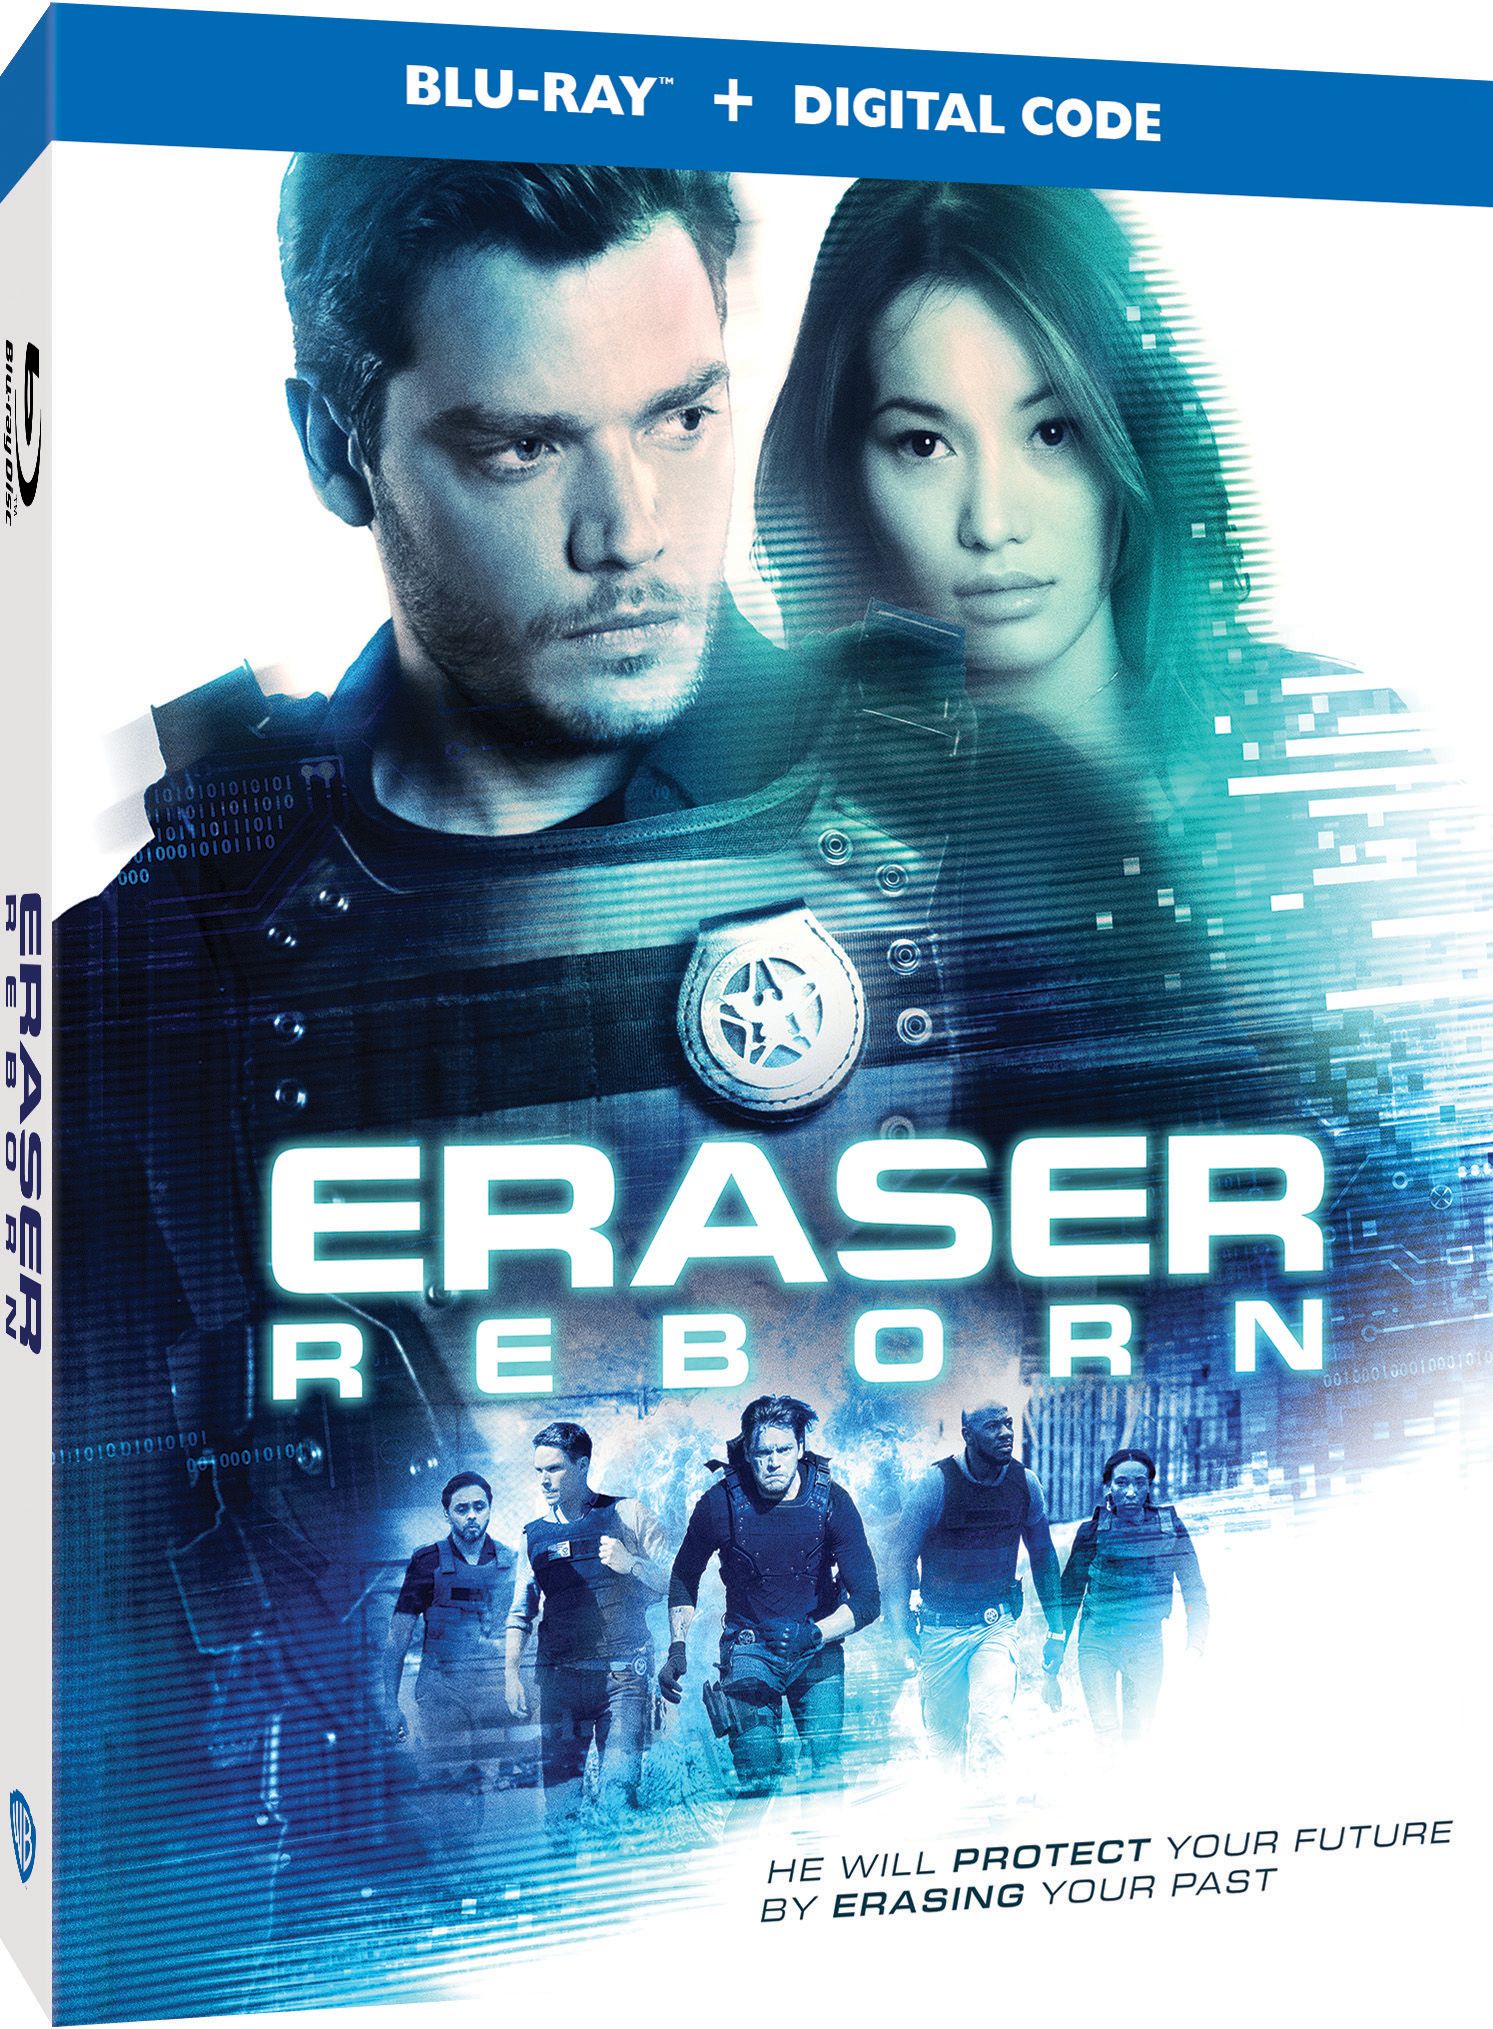 Eraser: Reborn Trailer Reboots Arnold Schwarzenegger Movie With New Star